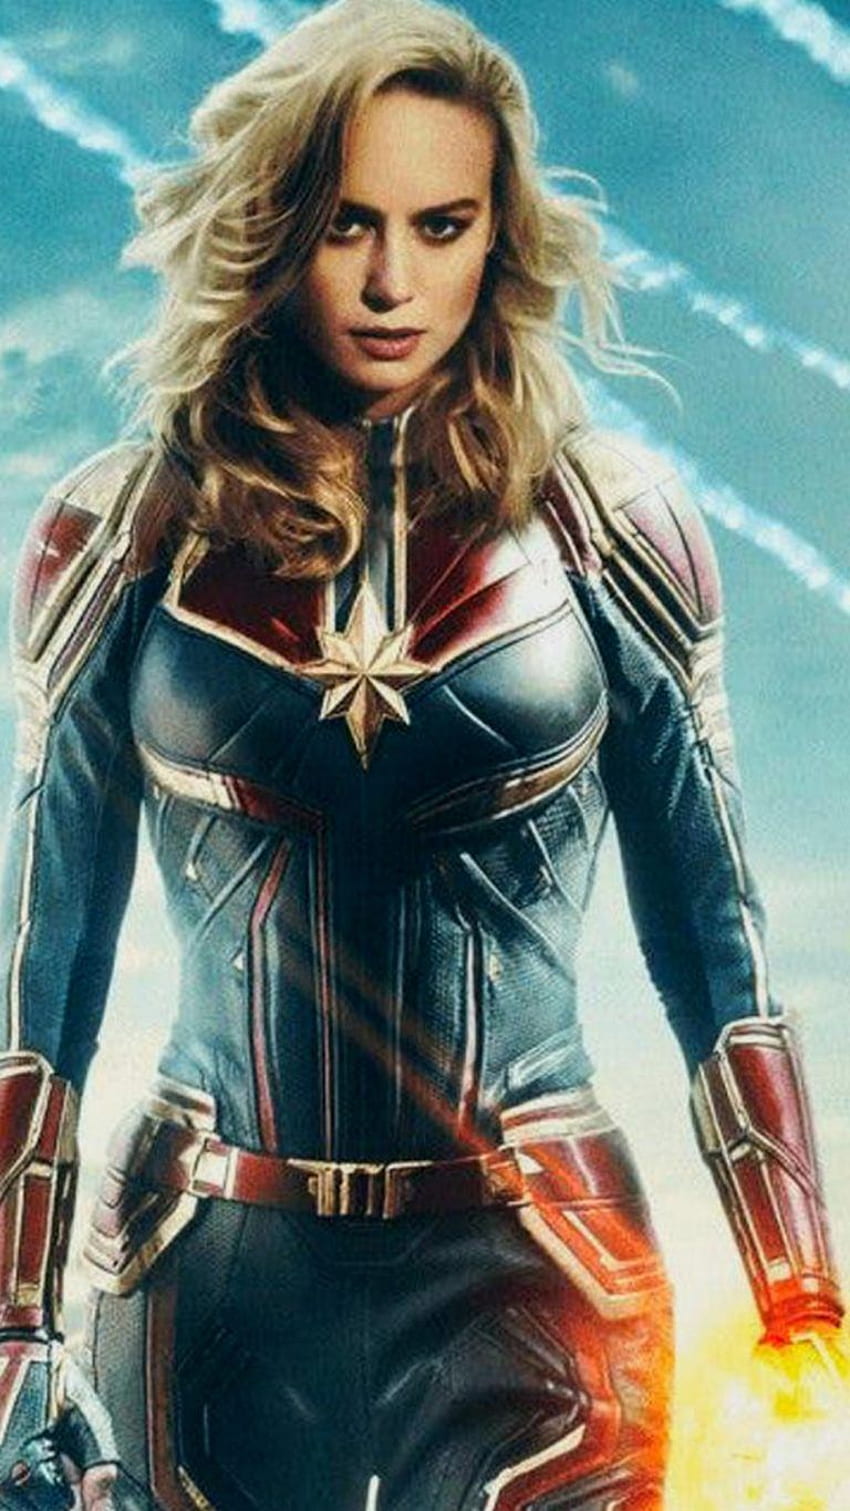 22+] Captain Marvel 4K Wallpapers - WallpaperSafari